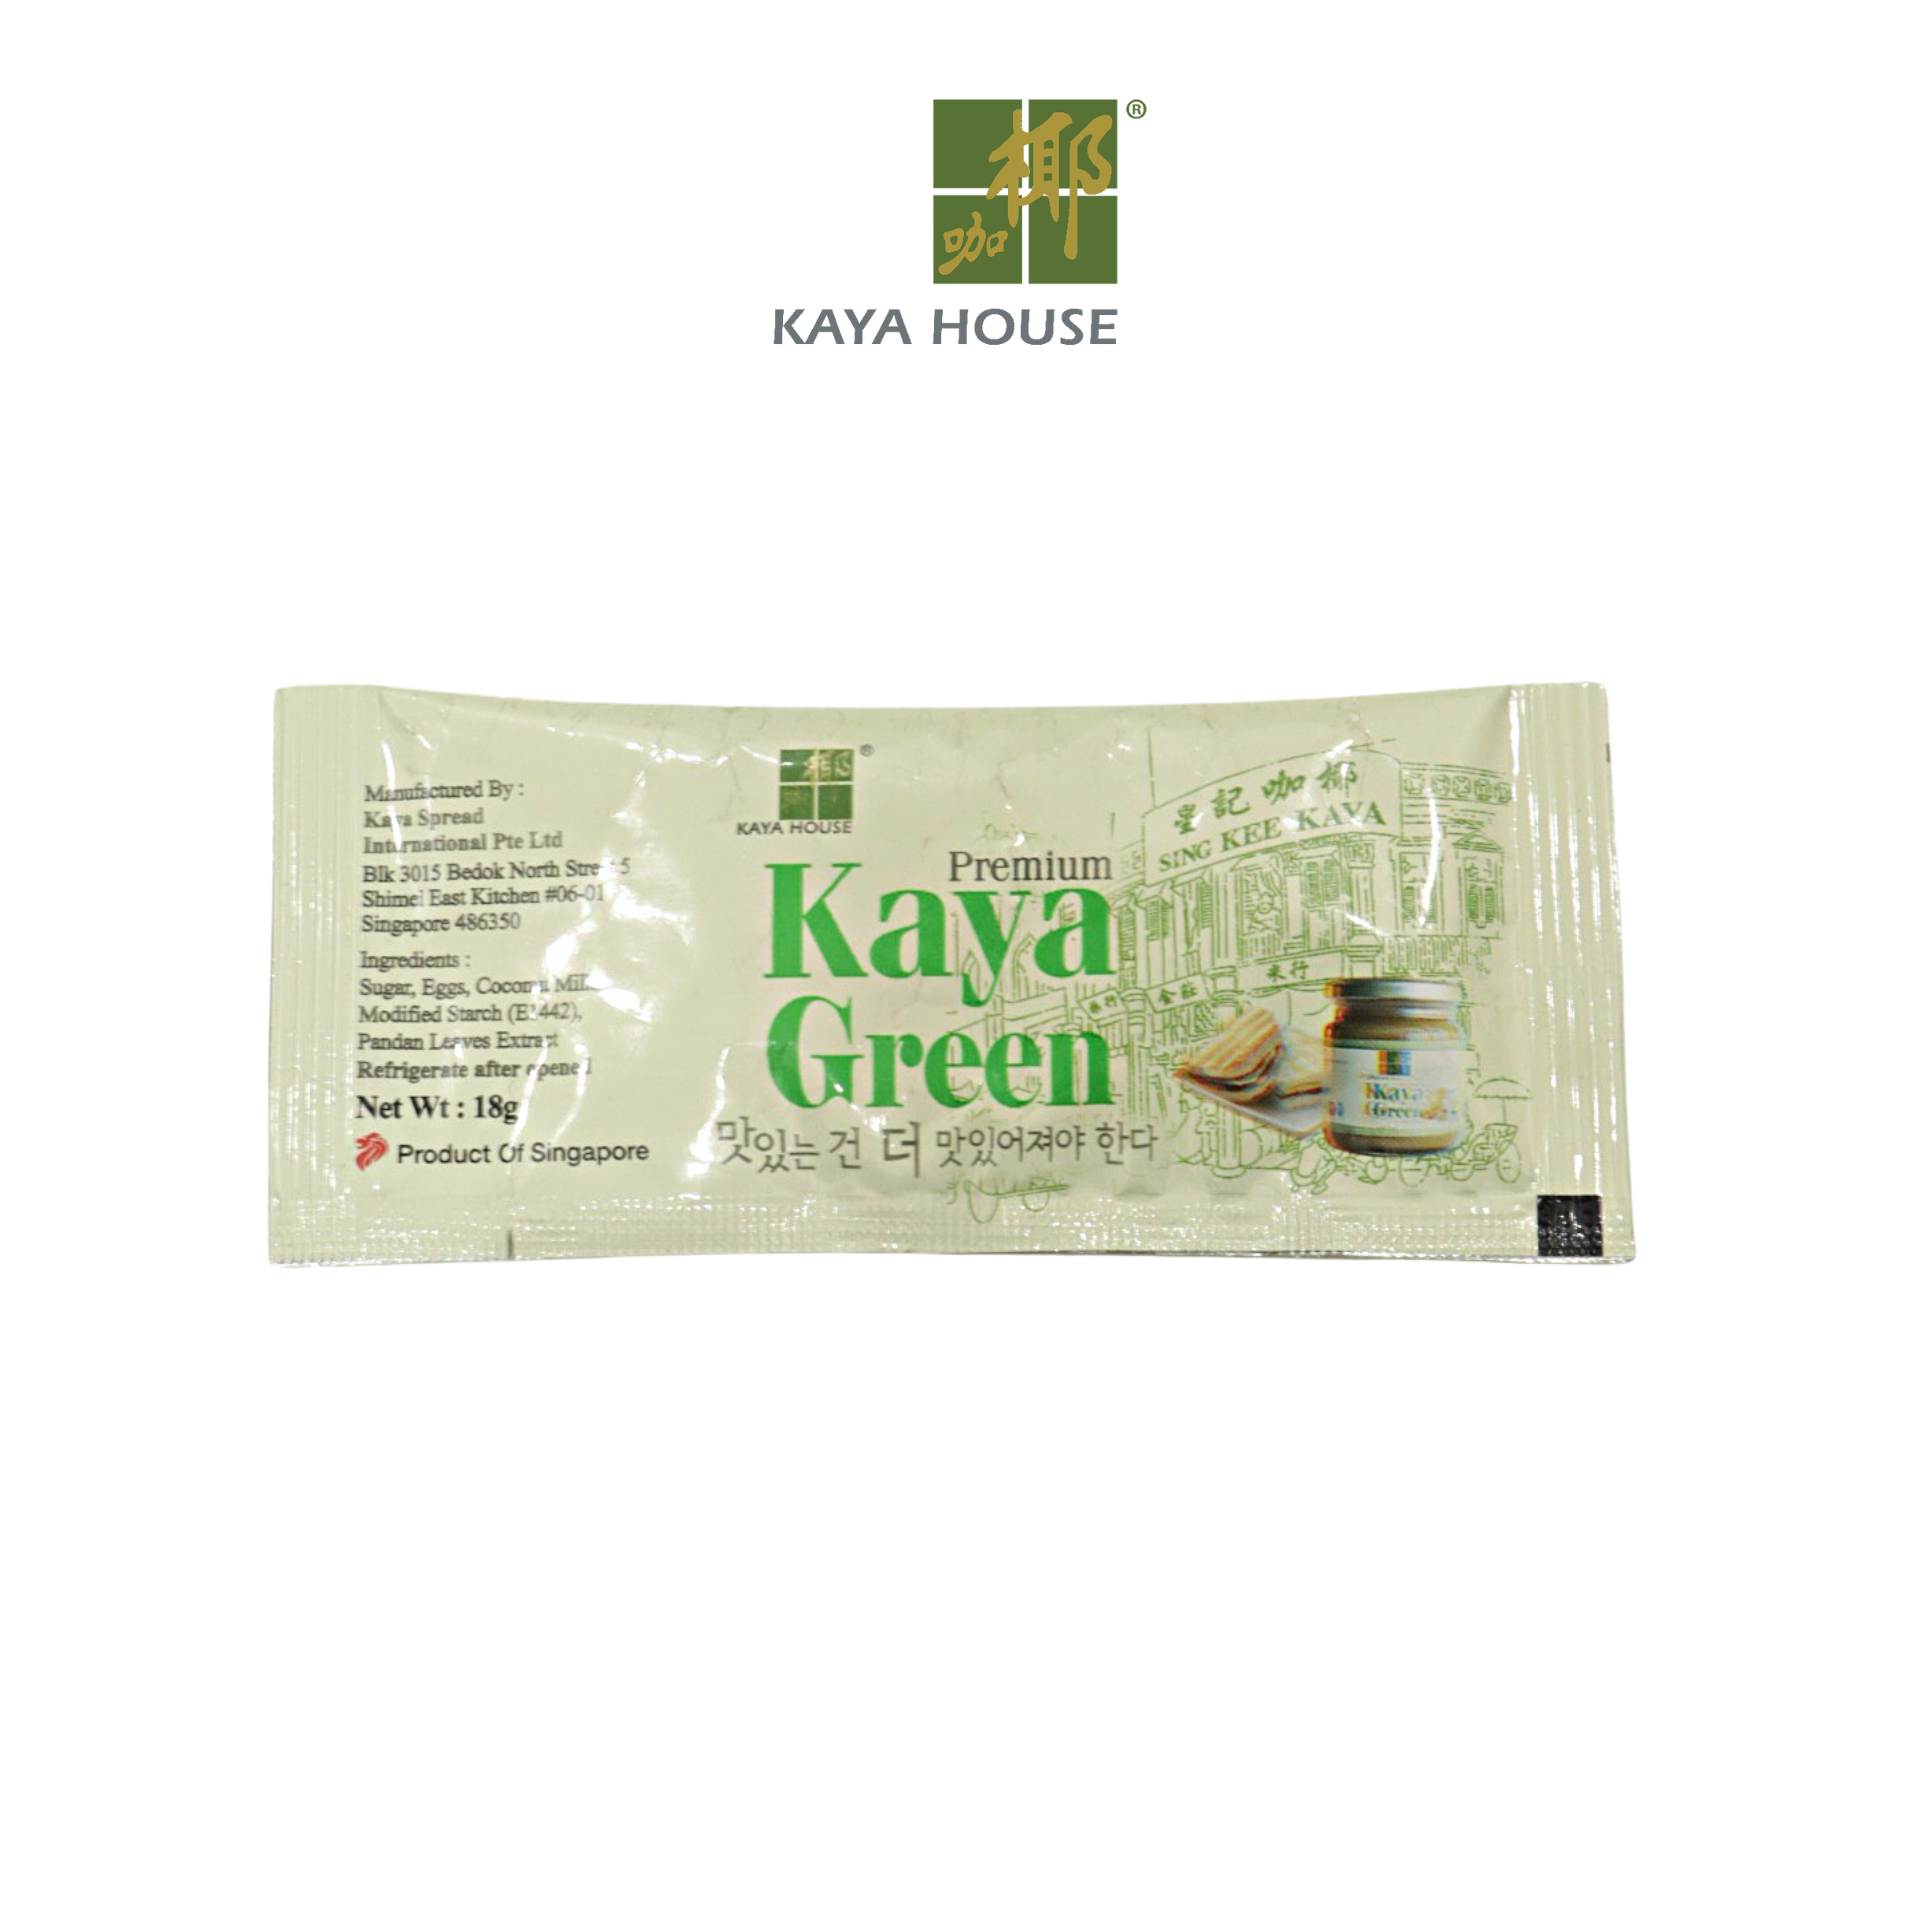 Mứt Kaya Singapore Nonya 900G (50 Túi) - Kaya House - Ăn kèm với Sandwich, làm nguyên liệu nấu ăn